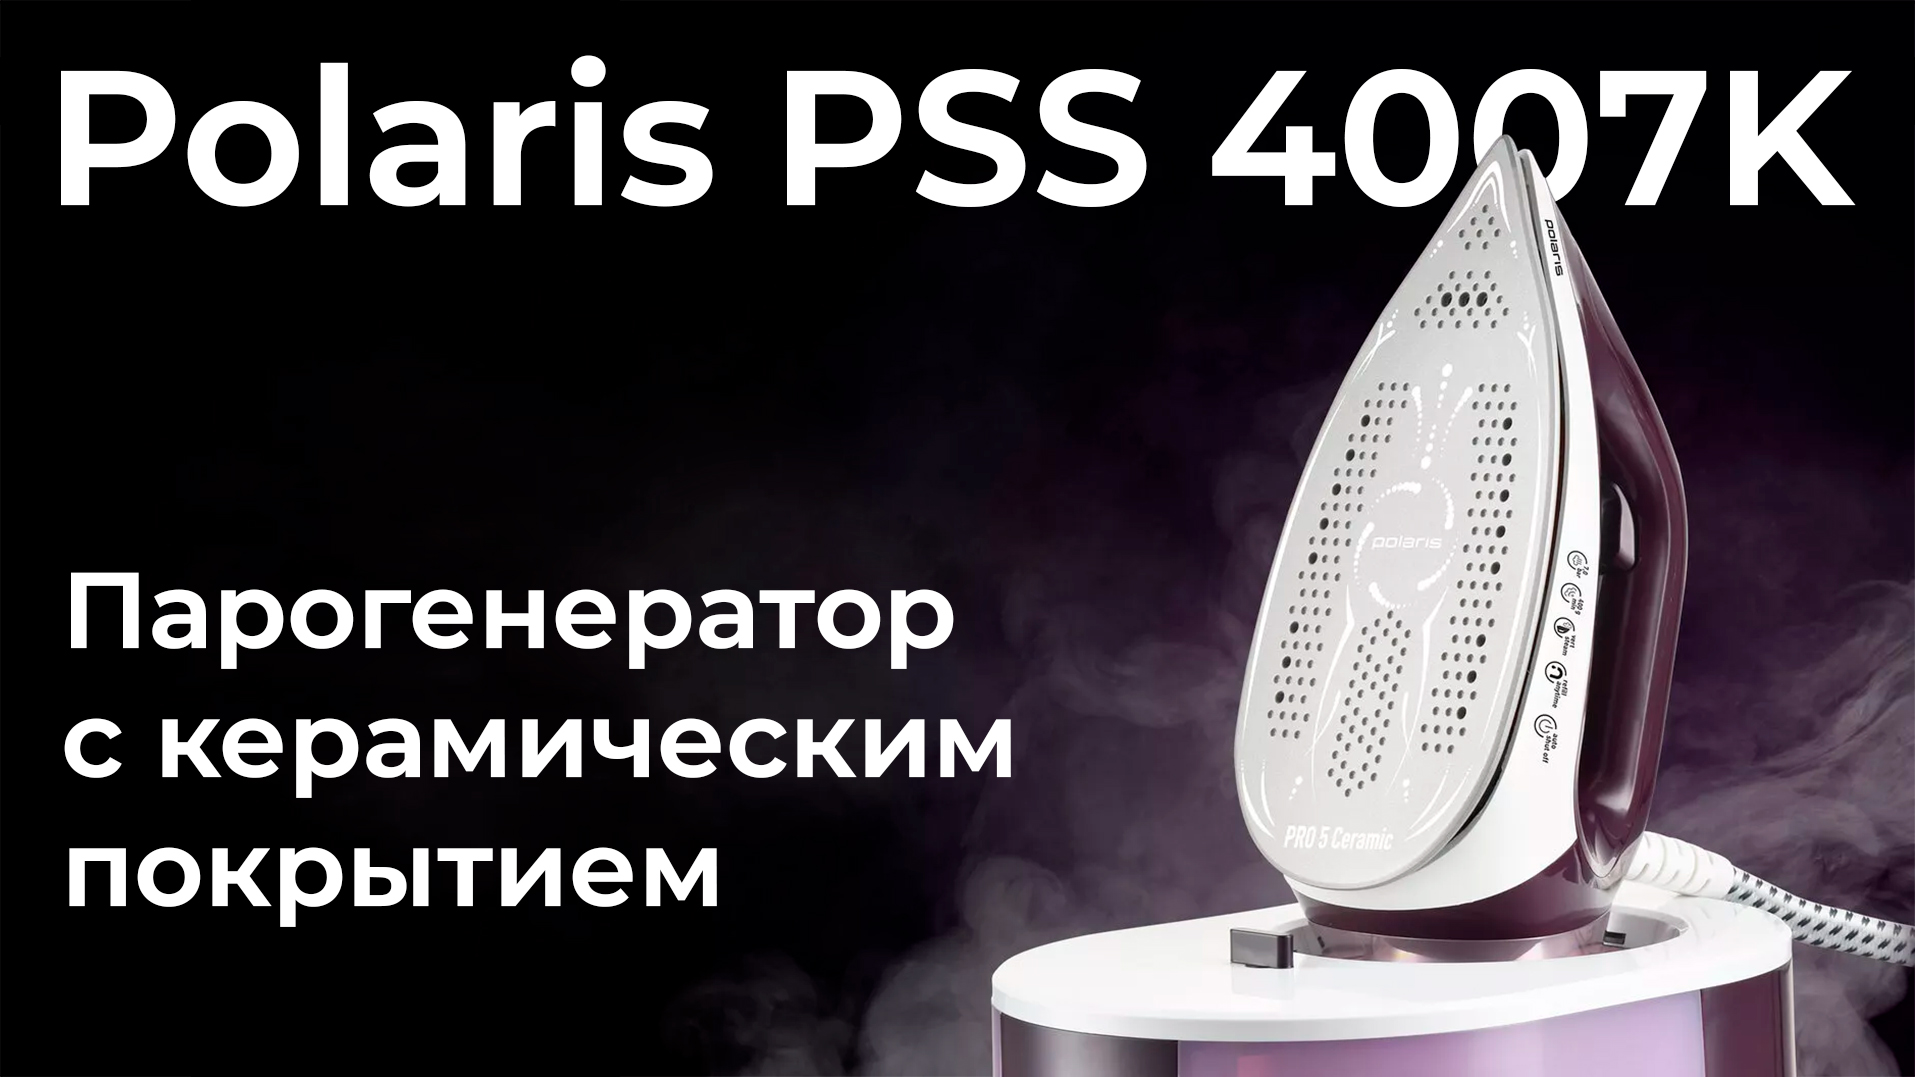 Обзор парогенератора Polaris PSS 4007K